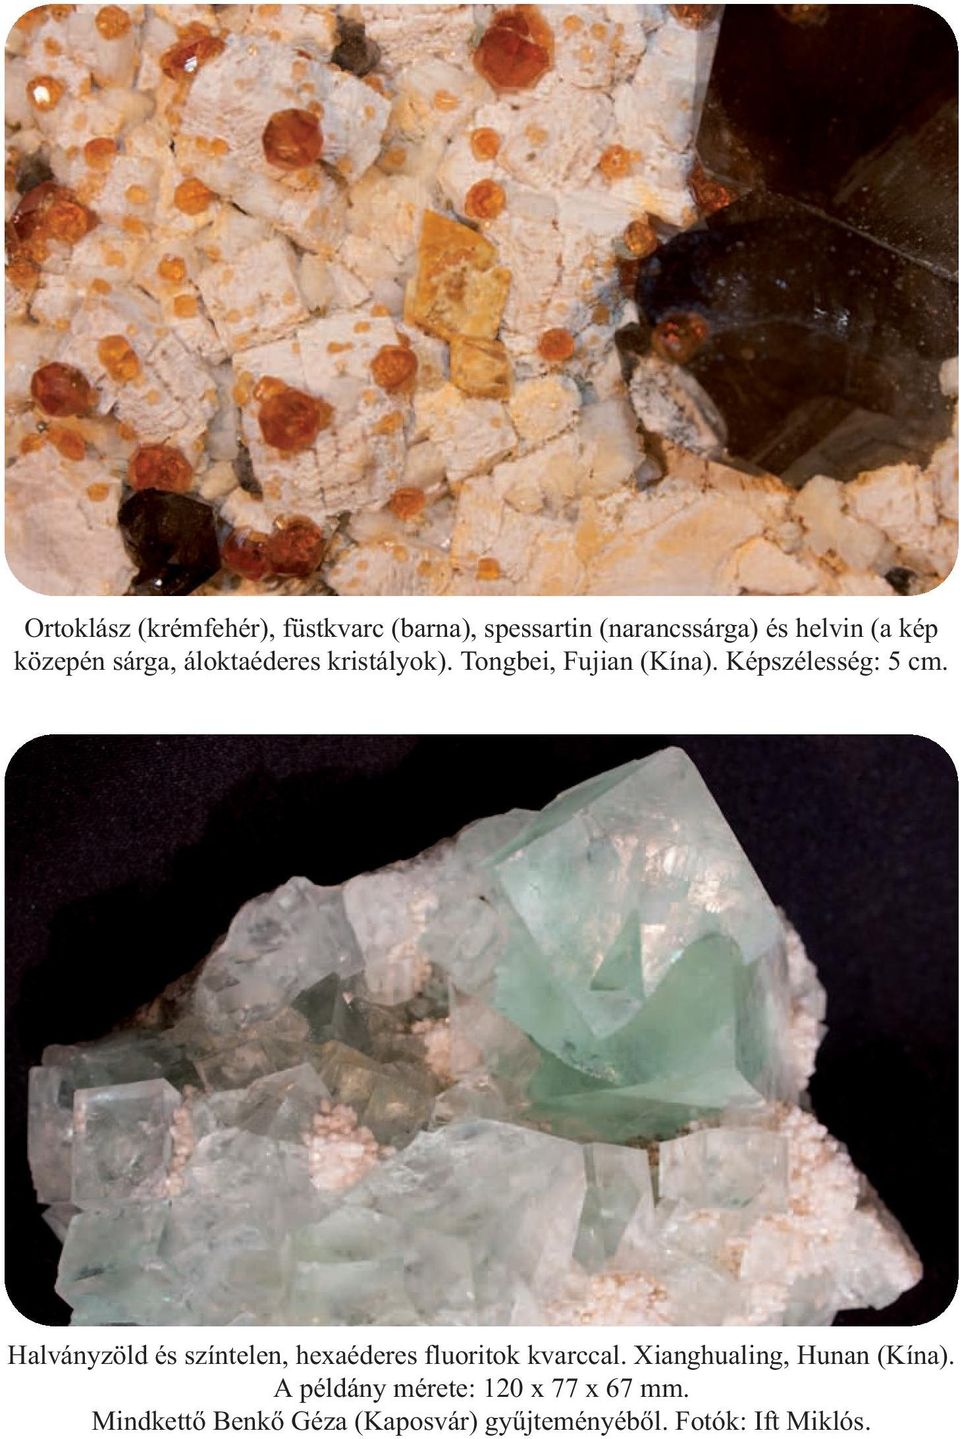 Halványzöld és színtelen, hexaéderes fluoritok kvarccal. Xianghualing, Hunan (Kína).